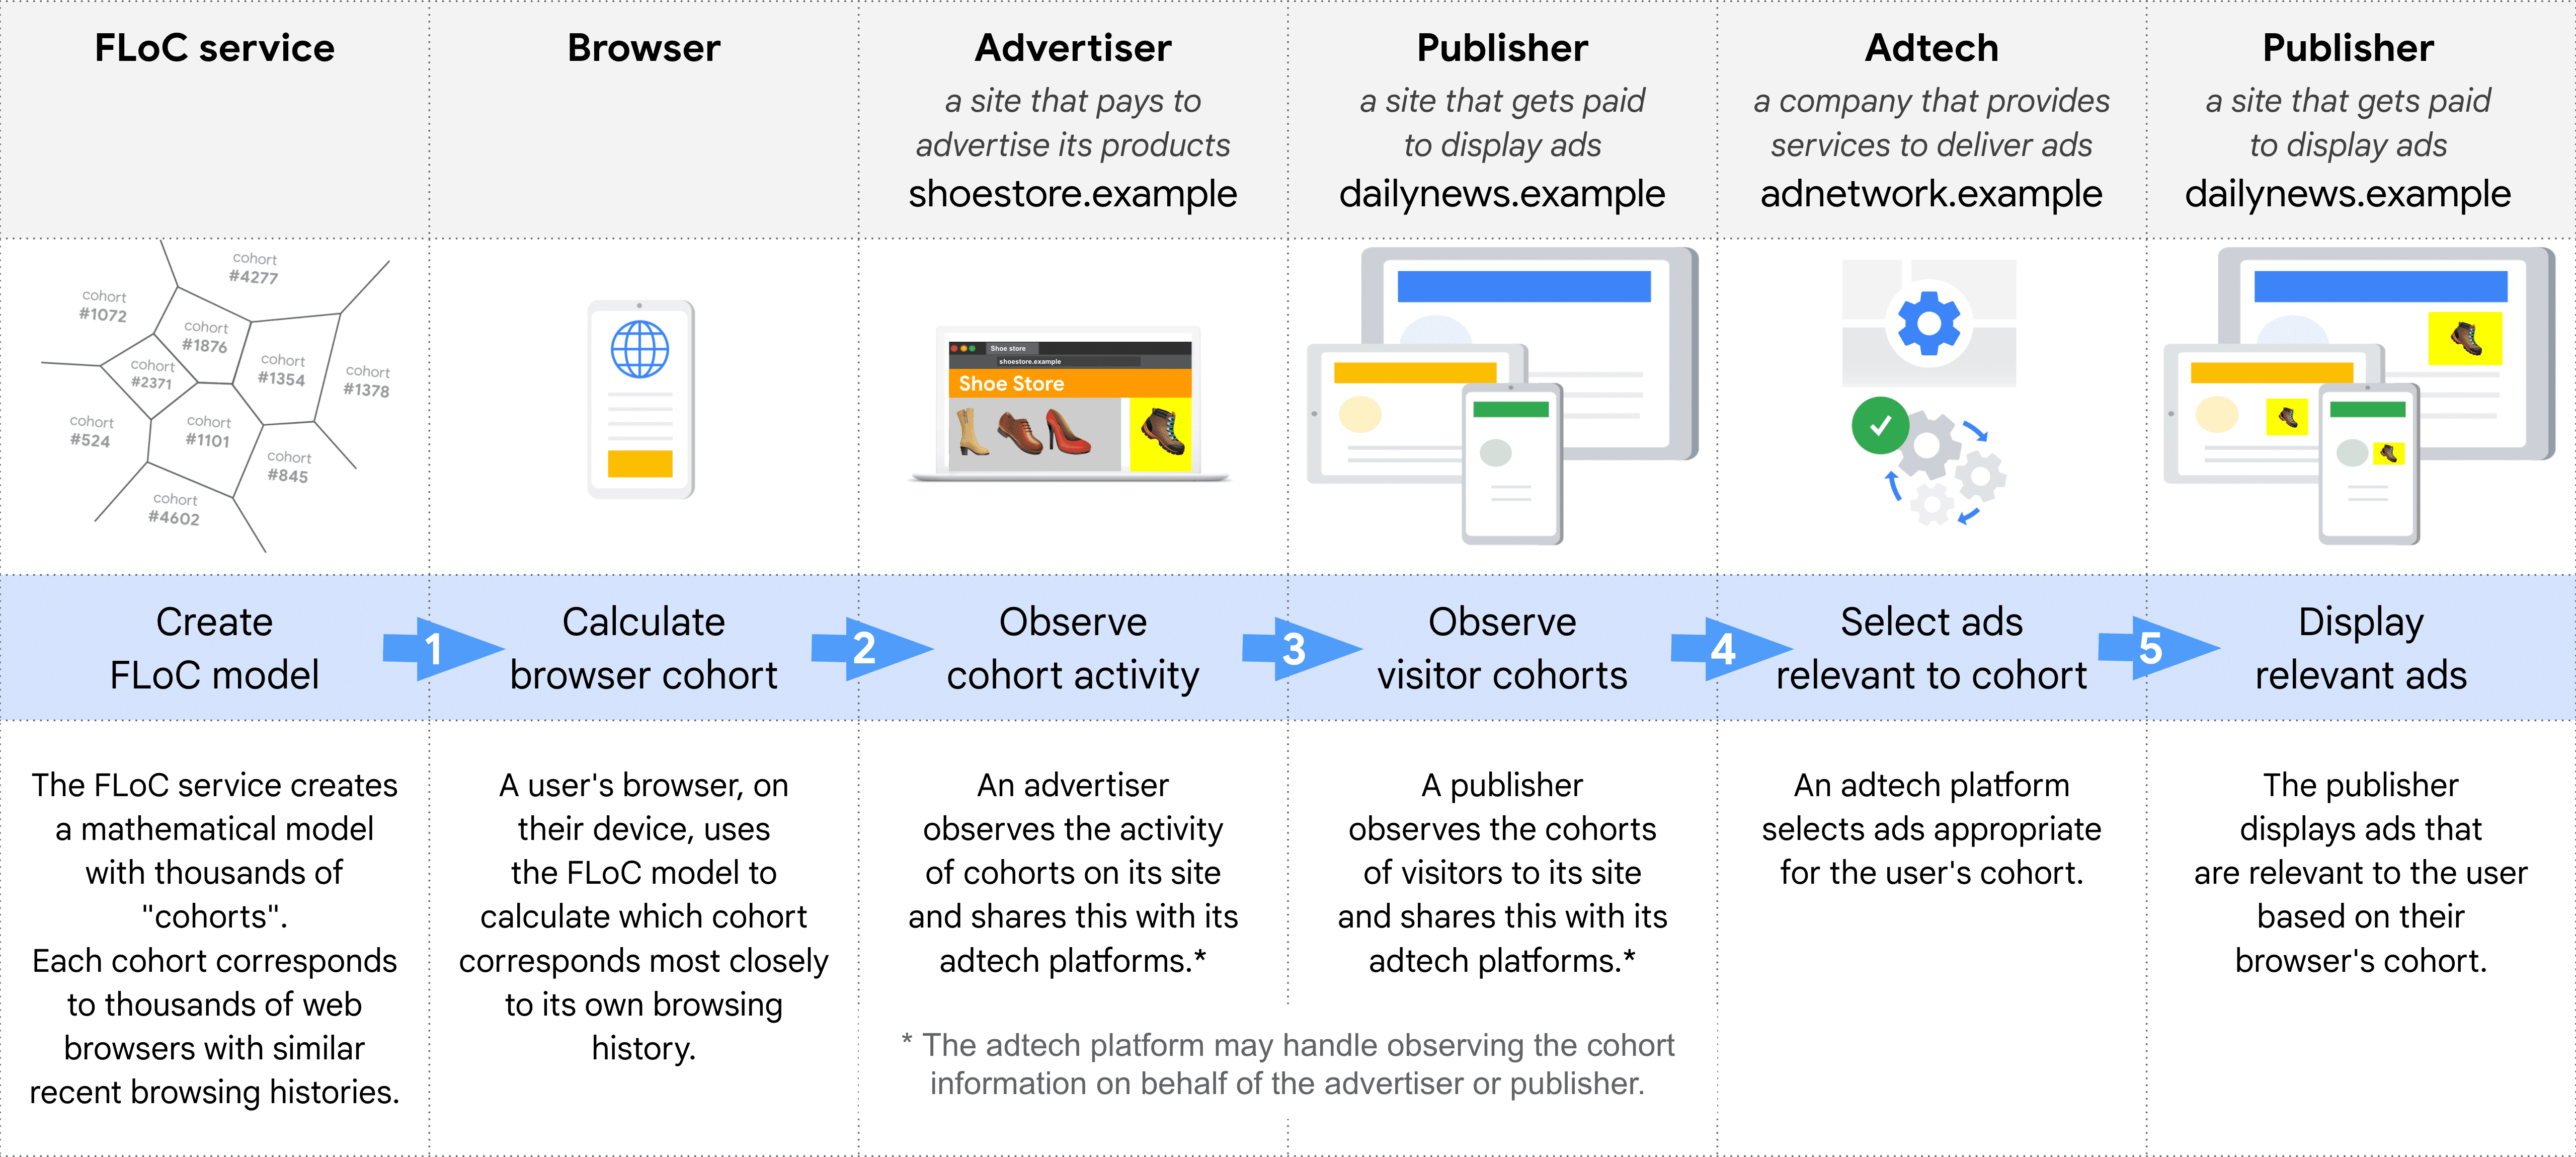 Diagramm, das Schritt für Schritt die verschiedenen Rollen bei der Auswahl und Auslieferung einer relevanten Anzeige mit FLoC zeigt: FLoC-Dienst, Browser, Werbetreibende, Publisher (zur Beobachtung von Kohorten), Anzeigentechnologie, Publisher (zum Schalten von Anzeigen)